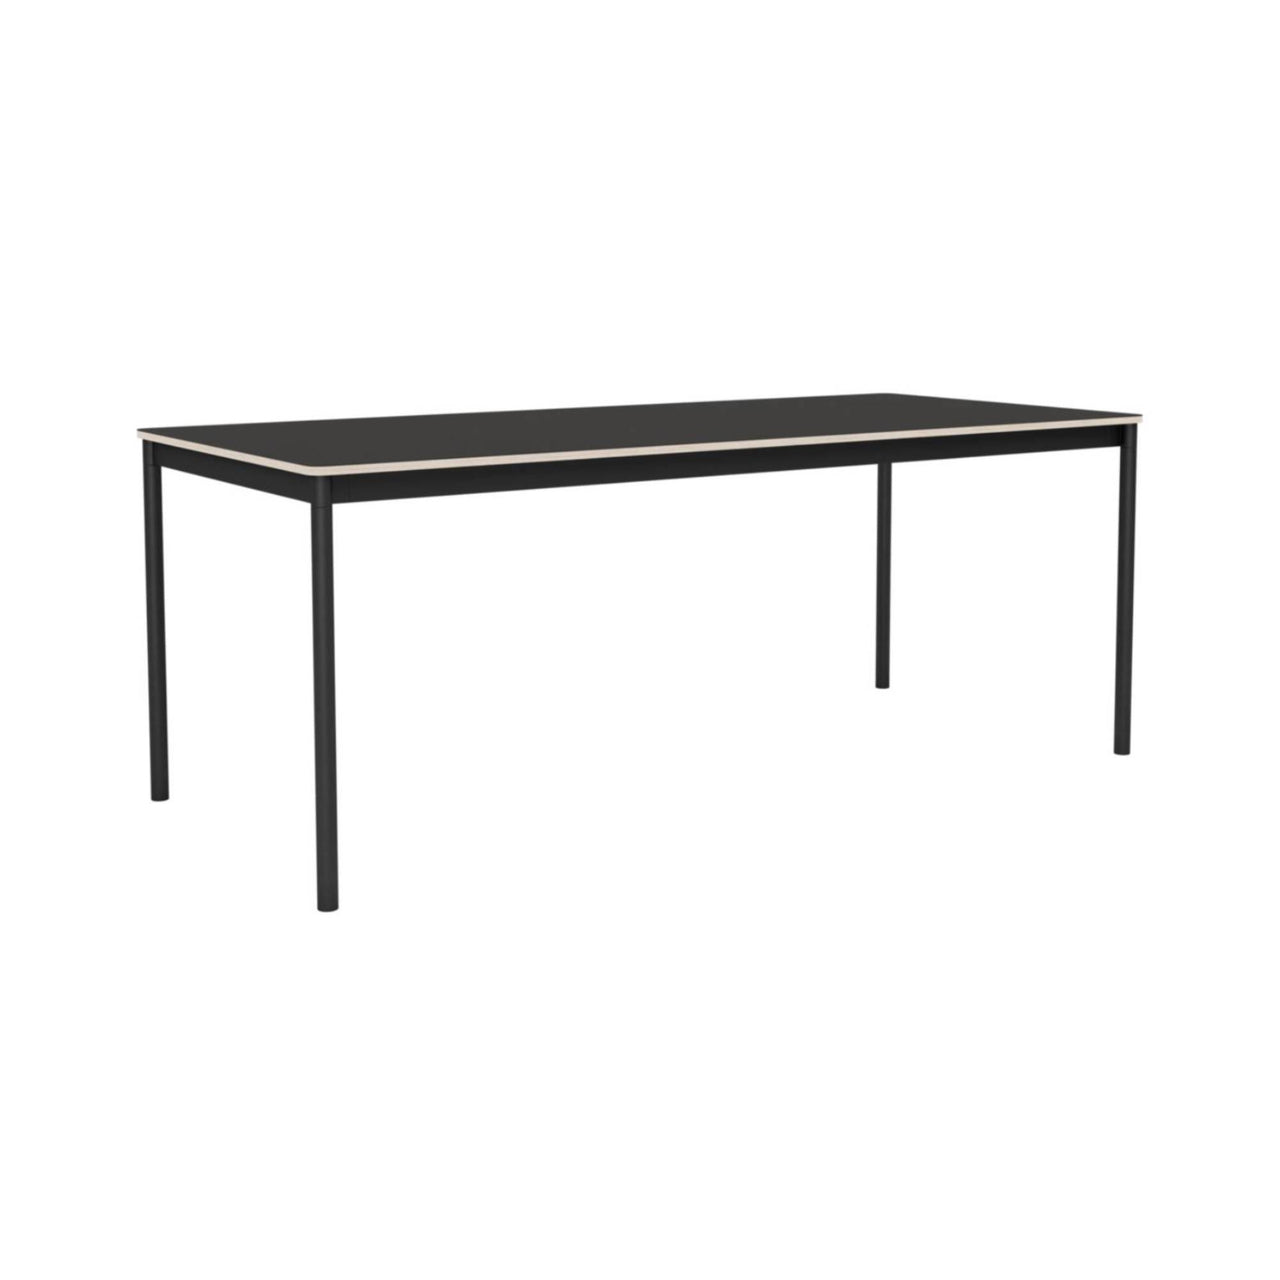 Base Table: Medium + Black Linoleum + Plywood Edge + Black